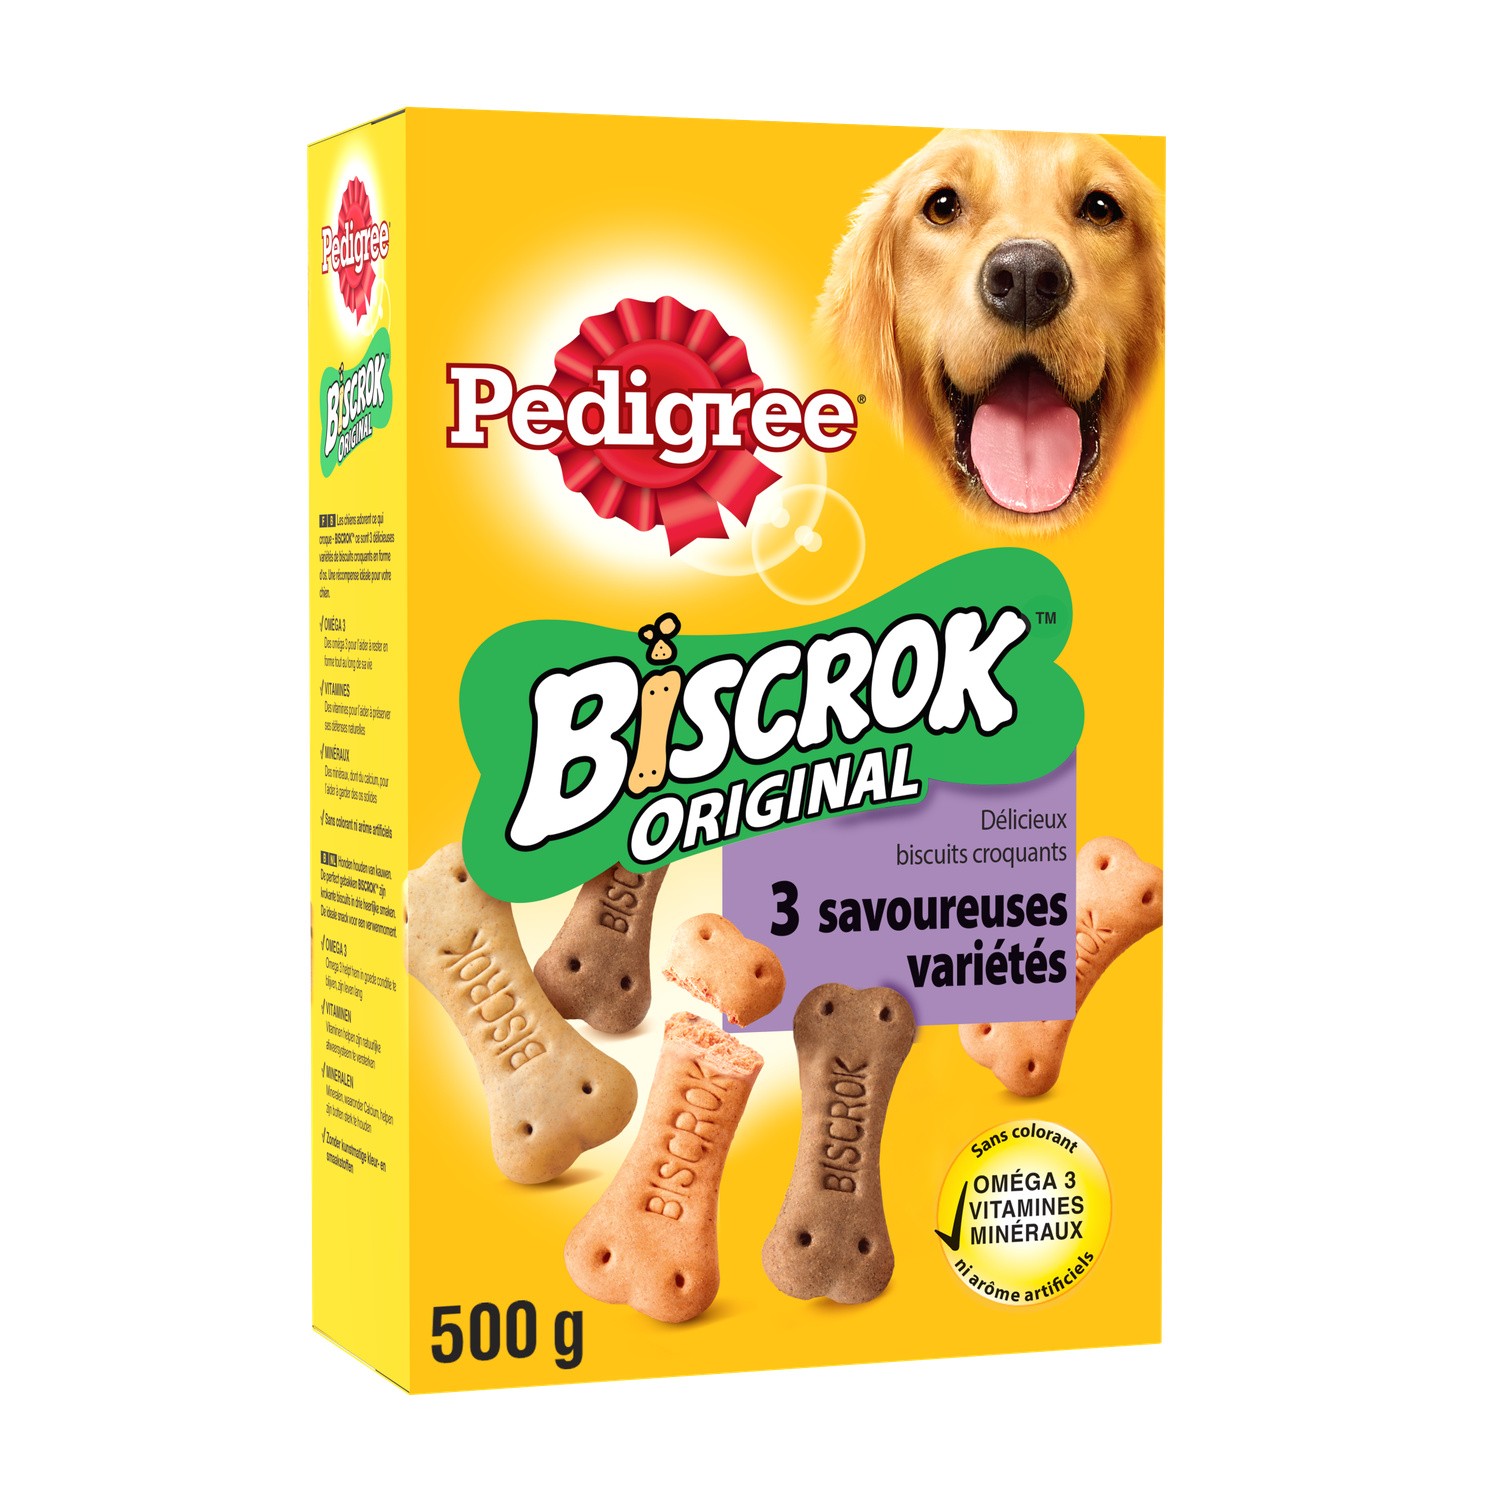 Friandises pour chien BISCROK